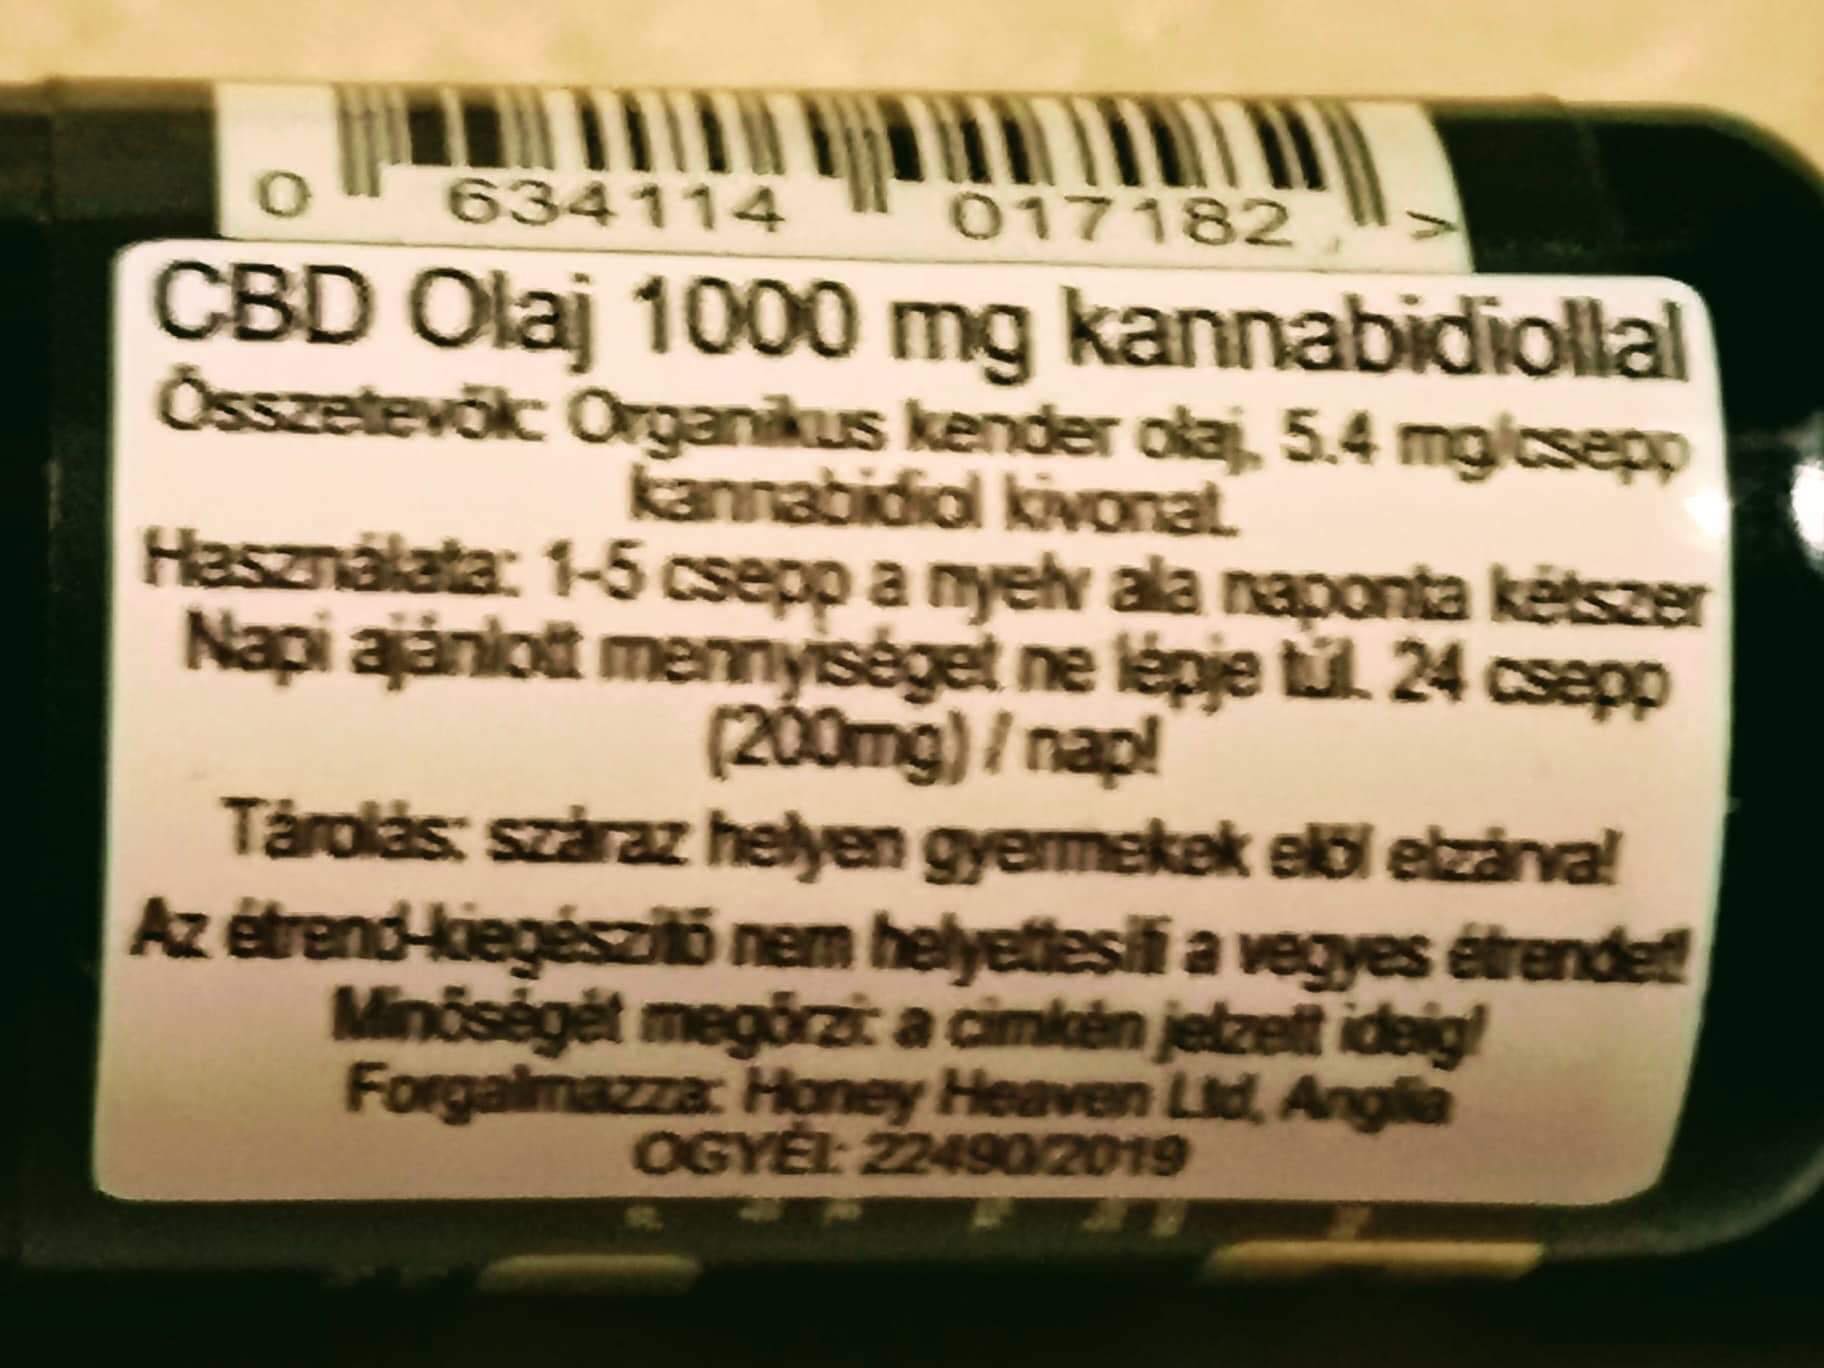 CBD Olaj 1000 mg kannabidiollal (10 ml) OGYÉI: 224902019 – Food SUPPLEMENT  185 drops – Cigarettatöltő Webáruház